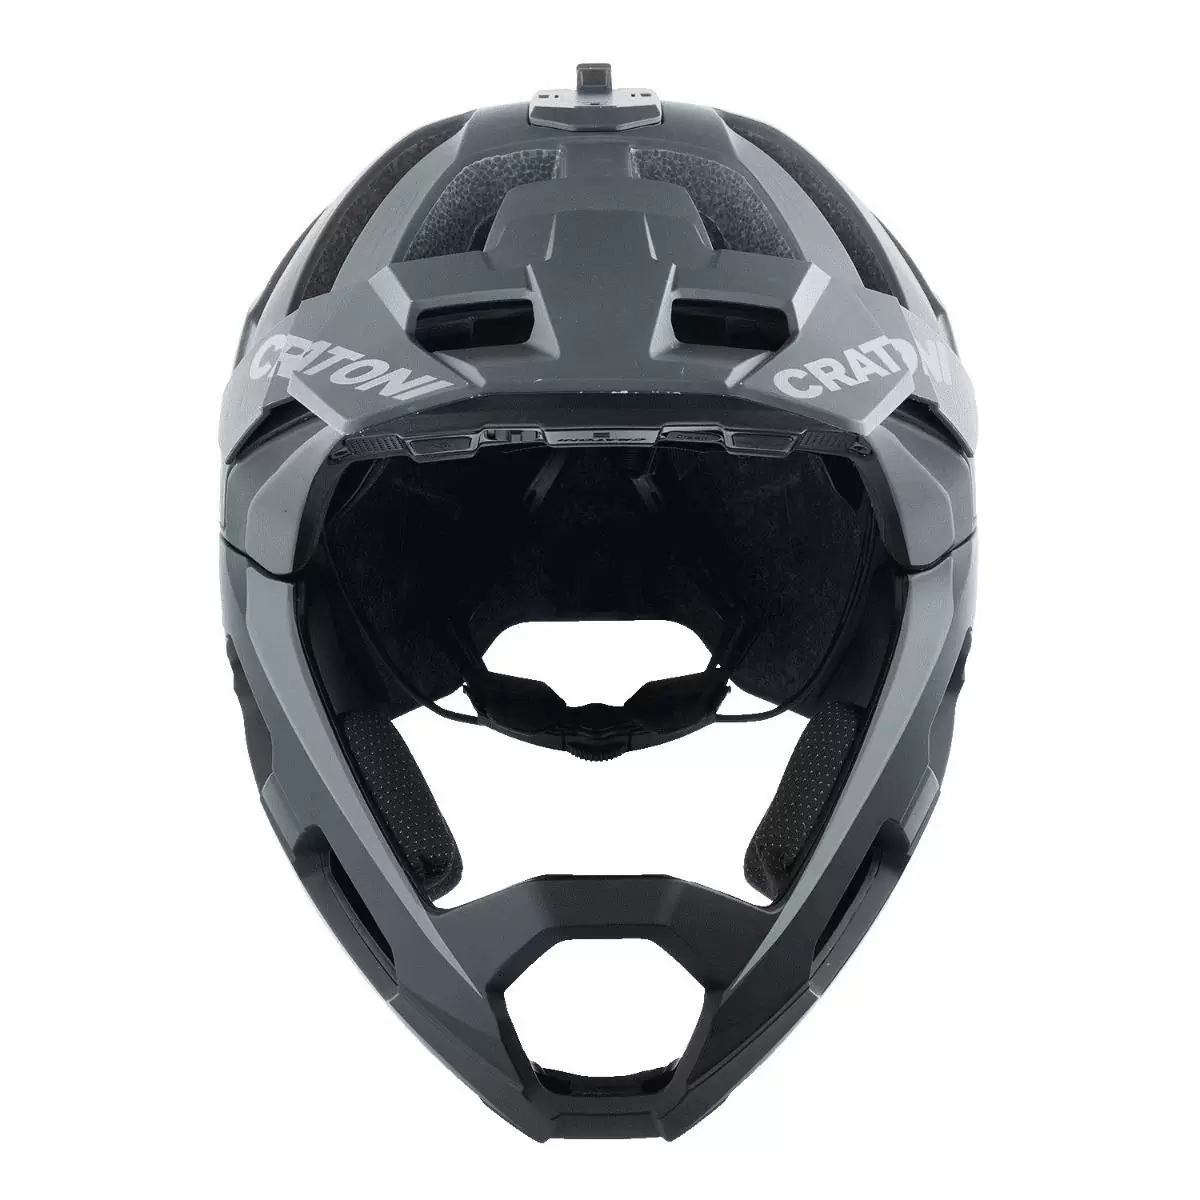 Madroc Pro Smart Helm Bluetooth schwarz Größe M/L (58-61cm) #3